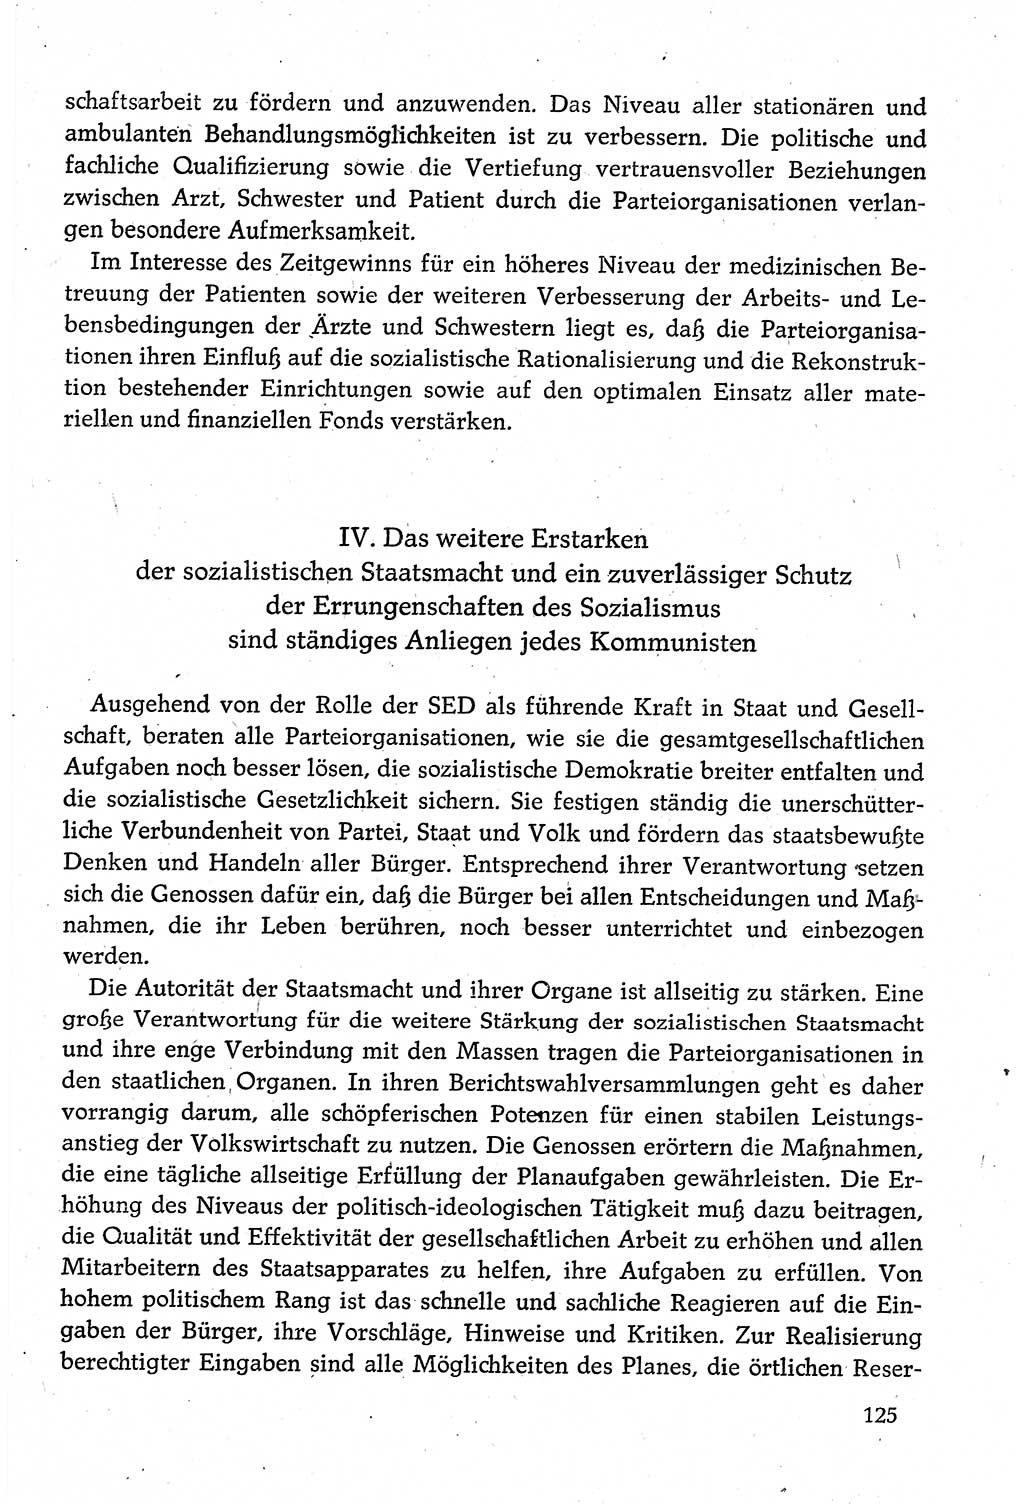 Dokumente der Sozialistischen Einheitspartei Deutschlands (SED) [Deutsche Demokratische Republik (DDR)] 1980-1981, Seite 125 (Dok. SED DDR 1980-1981, S. 125)